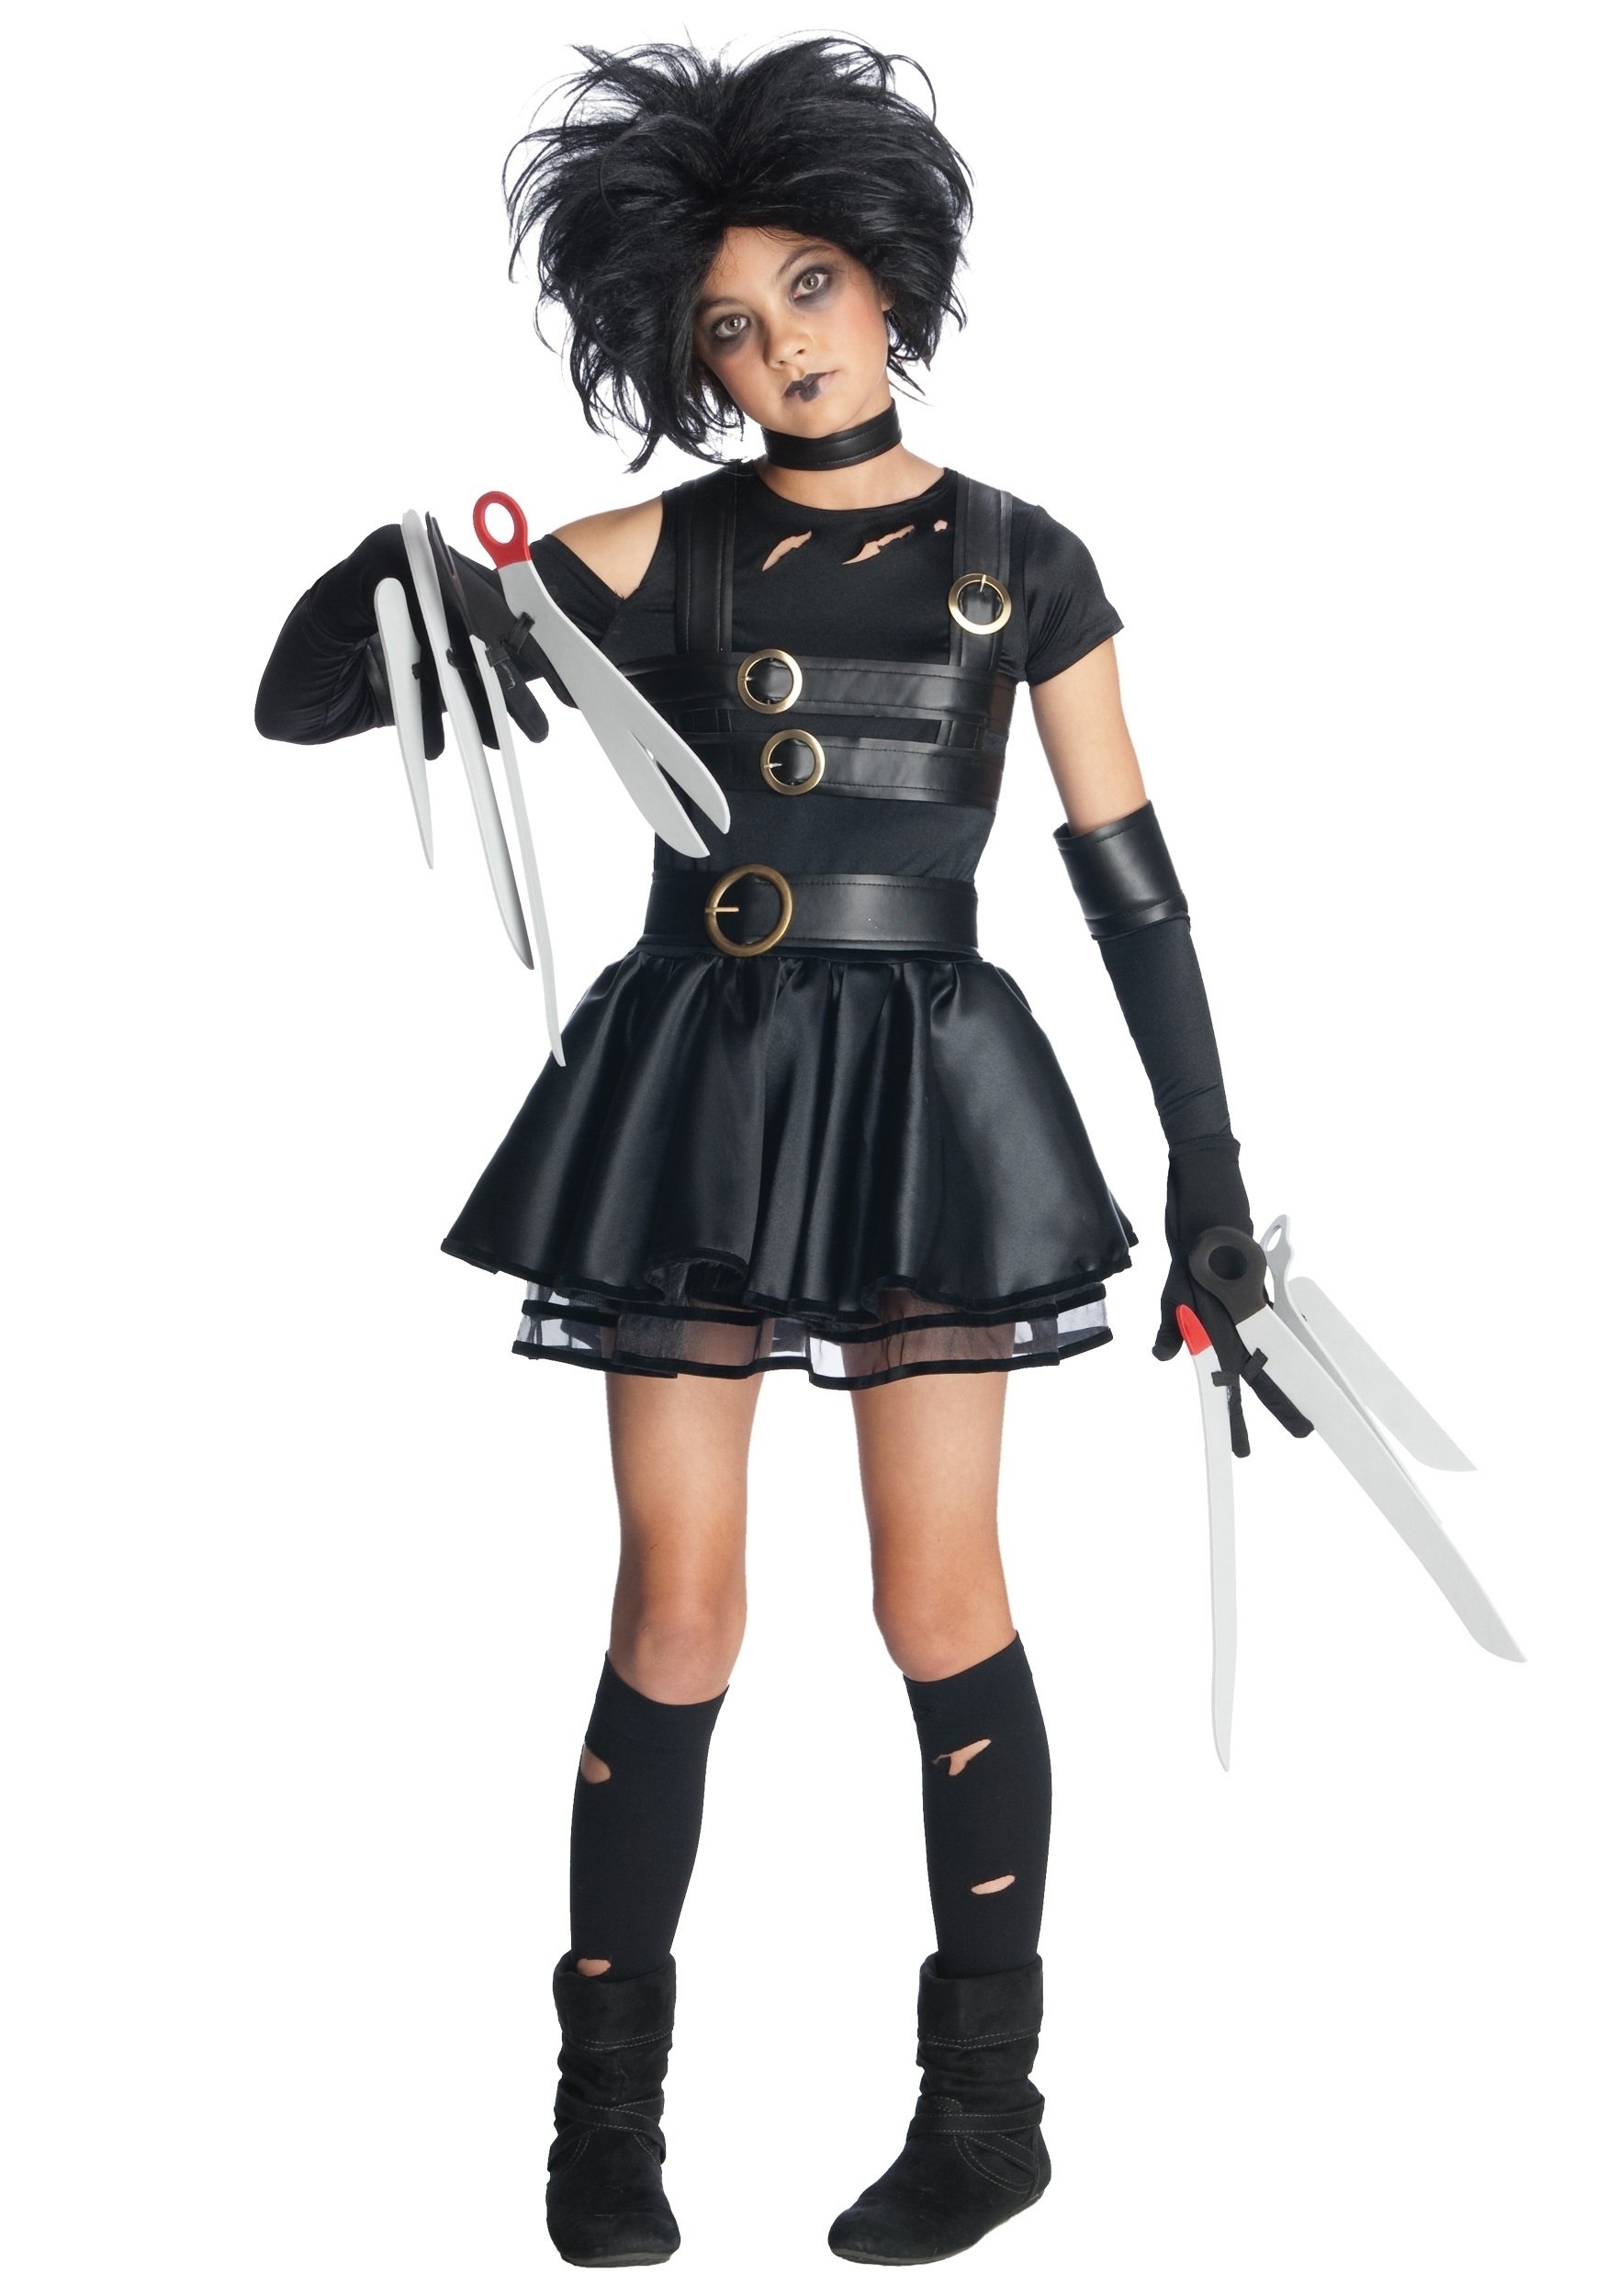 10 Attractive Halloween Costume Ideas For Tweens tween miss scissorhands costume 2 2022